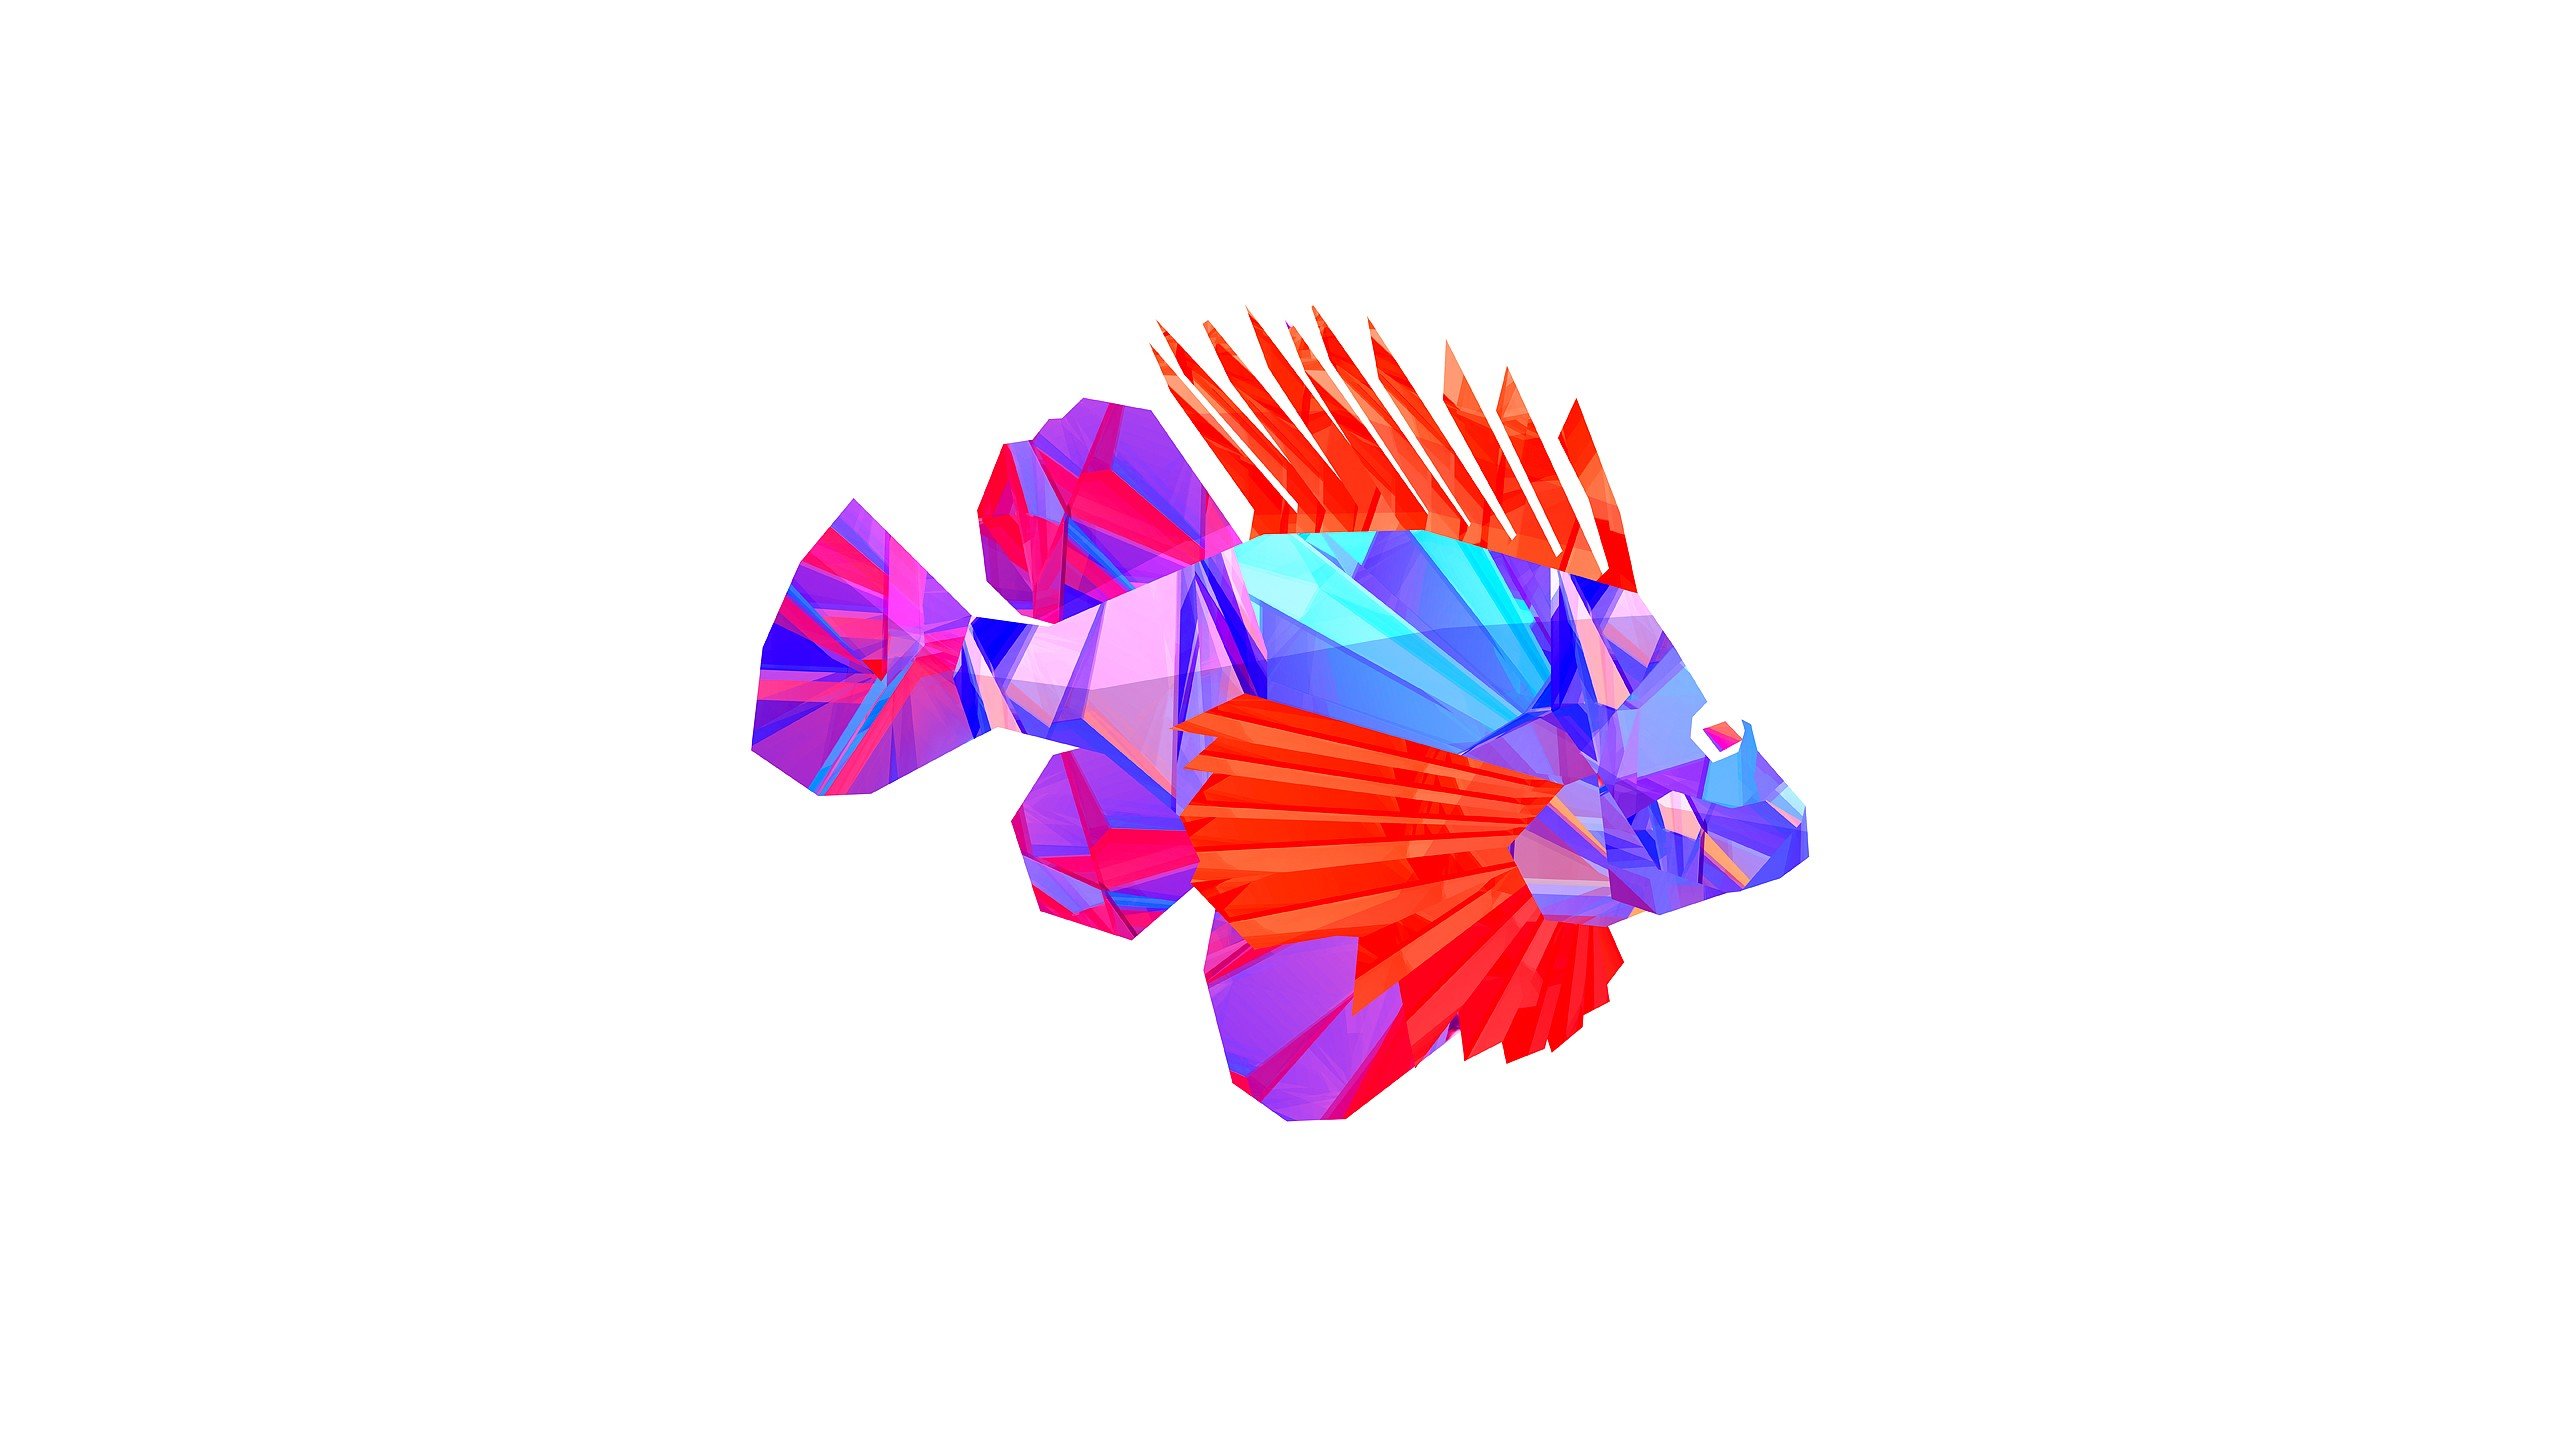 Justin Maller Abstract Animals Digital Art Fish Wallpaper HD Walls